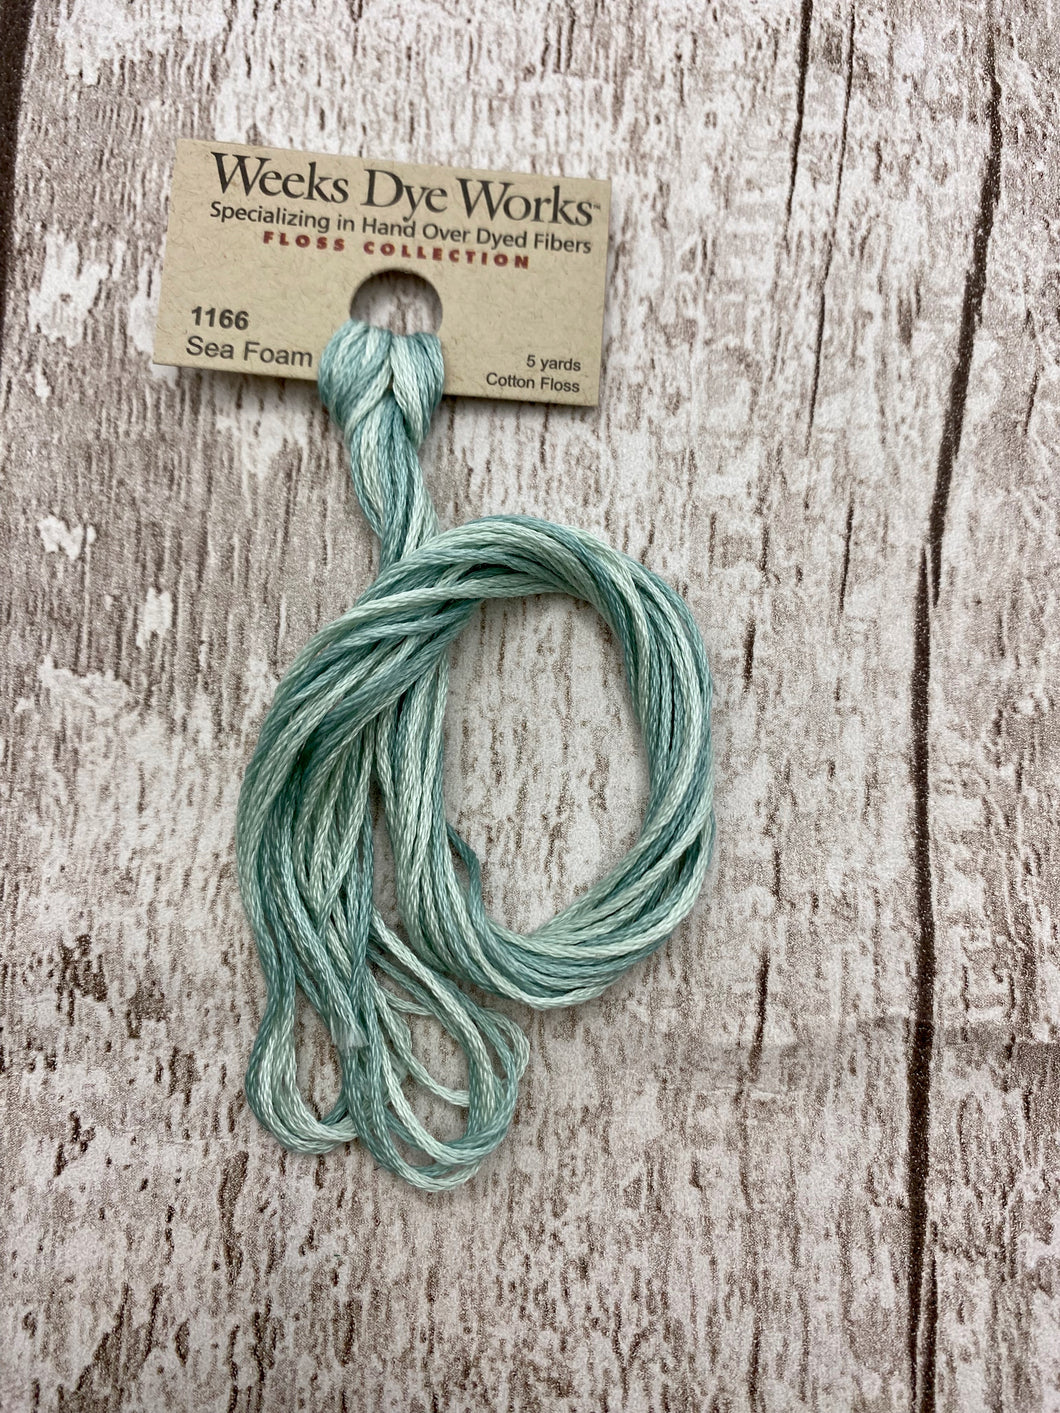 Sea Foam (#1166) Weeks Dye Works, 6-strand cotton floss